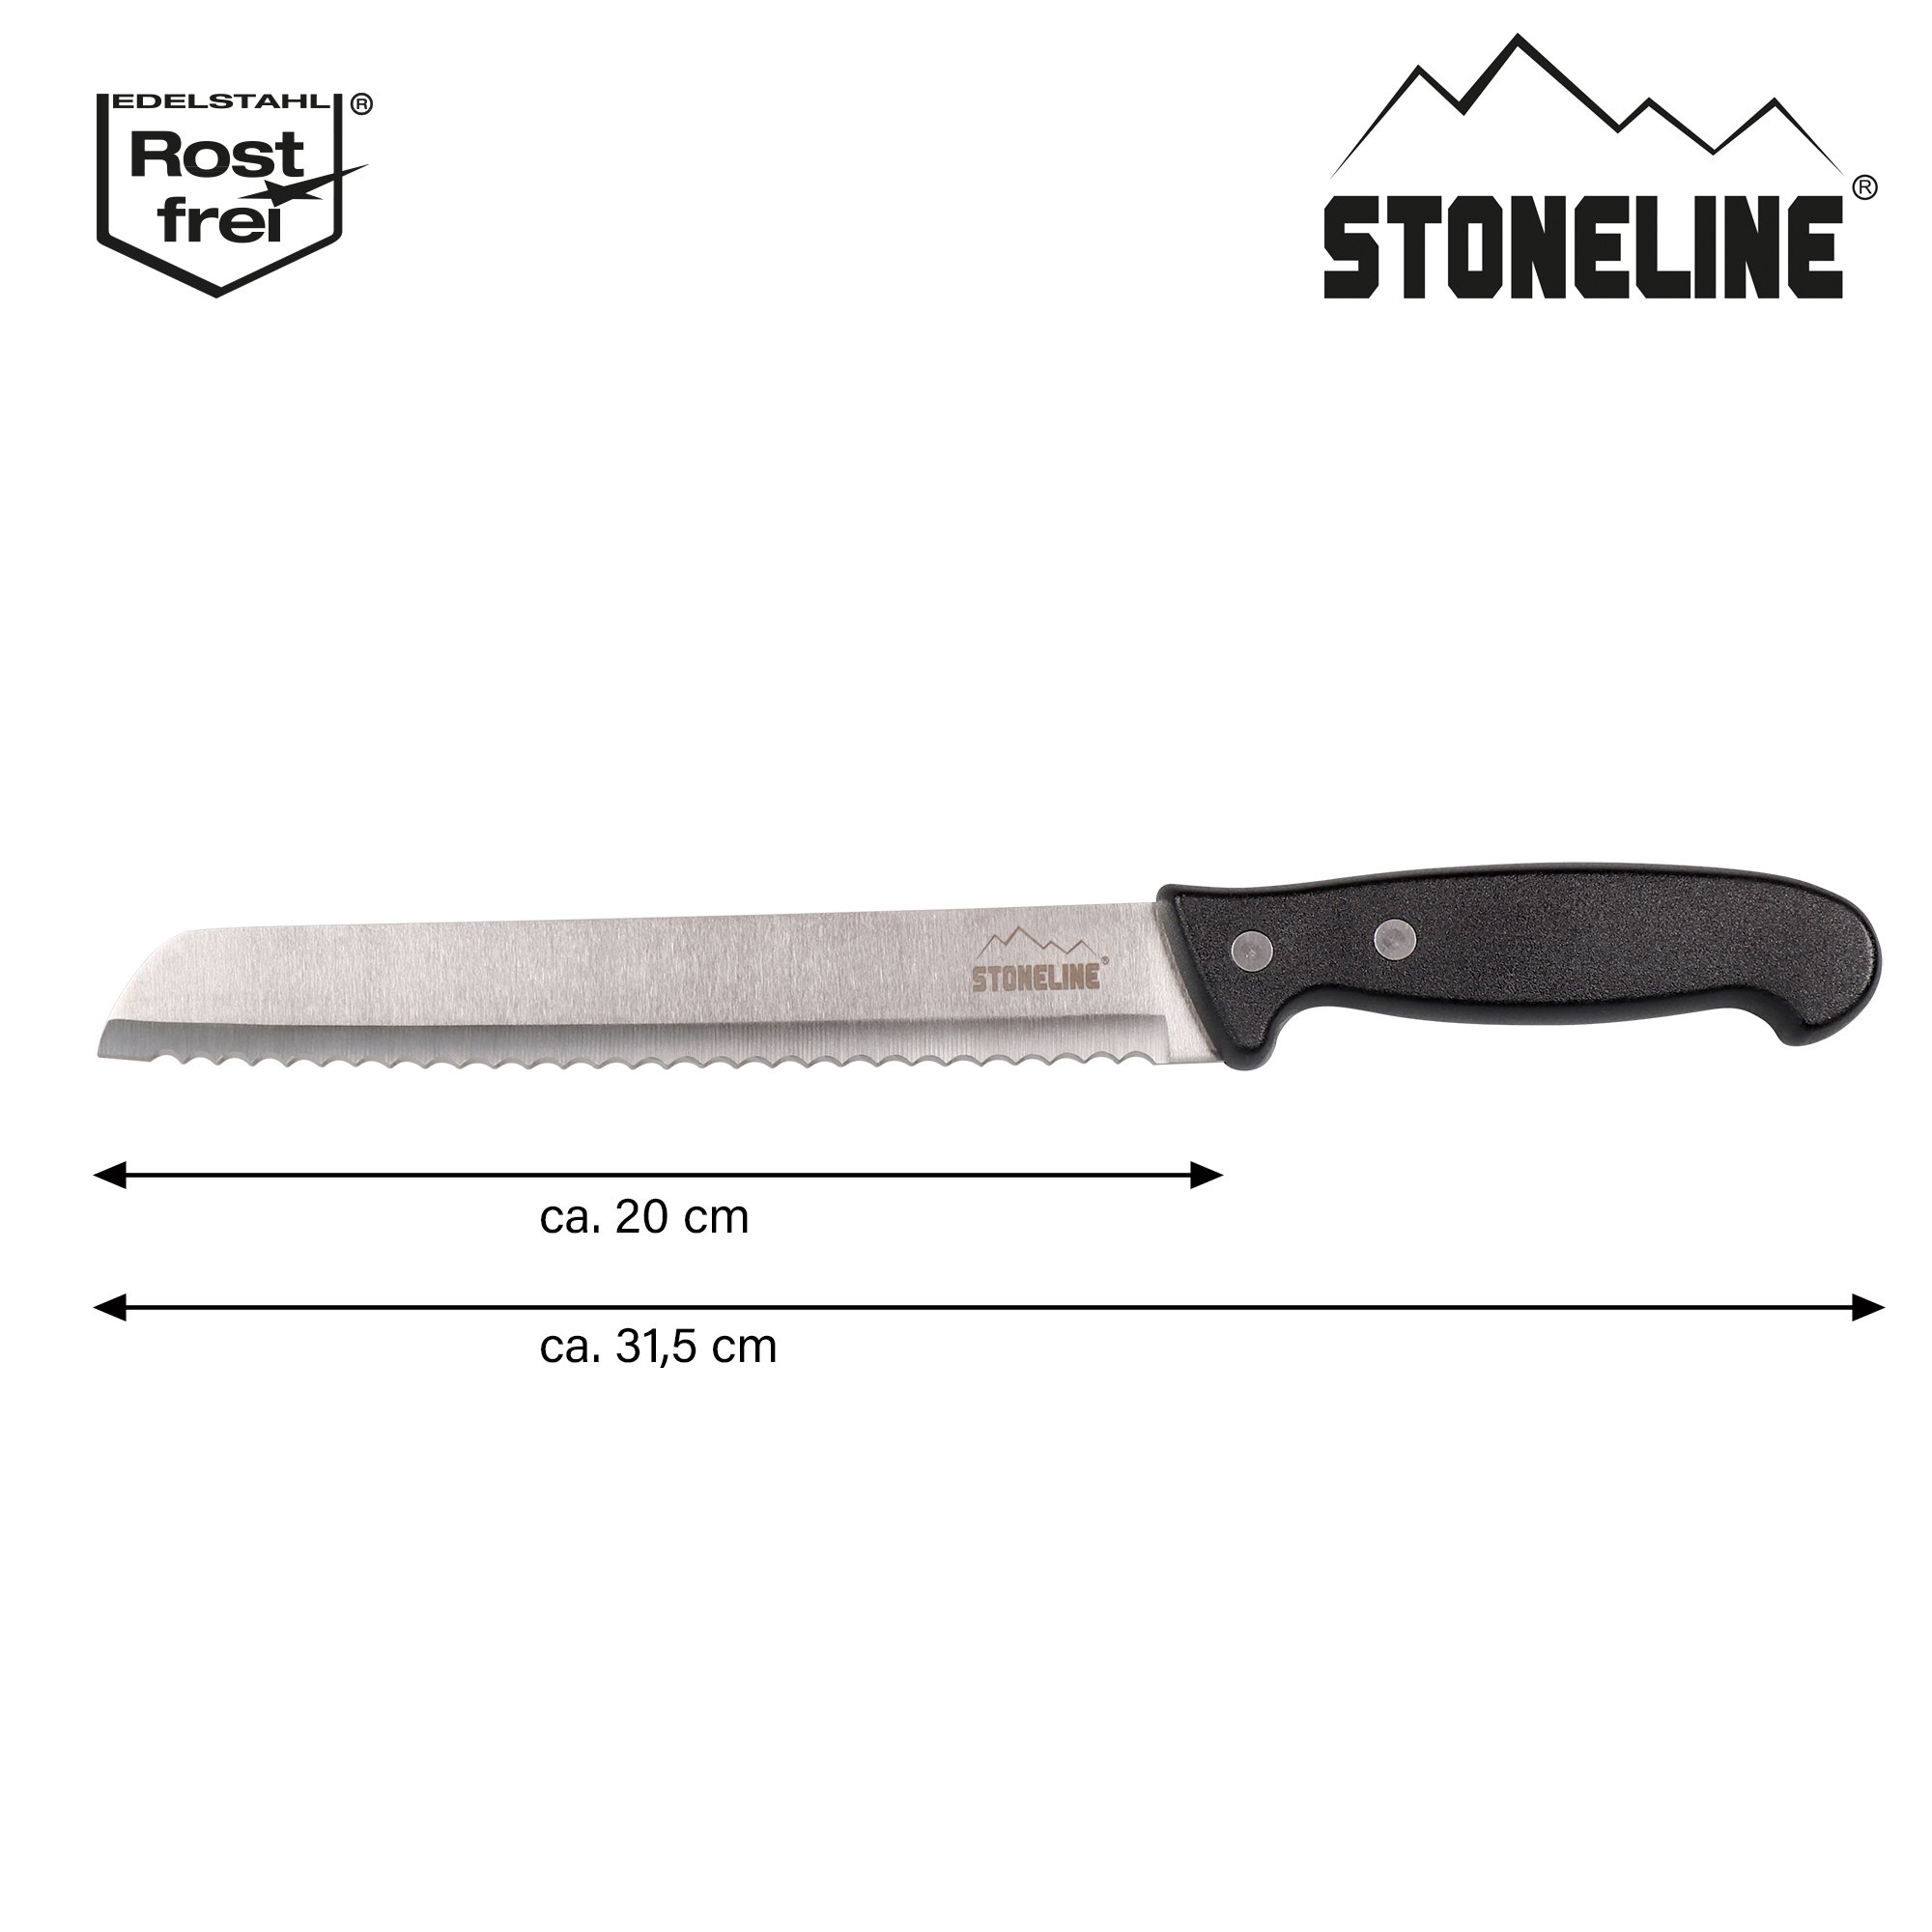 STONELINE® Cuchillo para pan de 31,5 cm, con protector de hoja